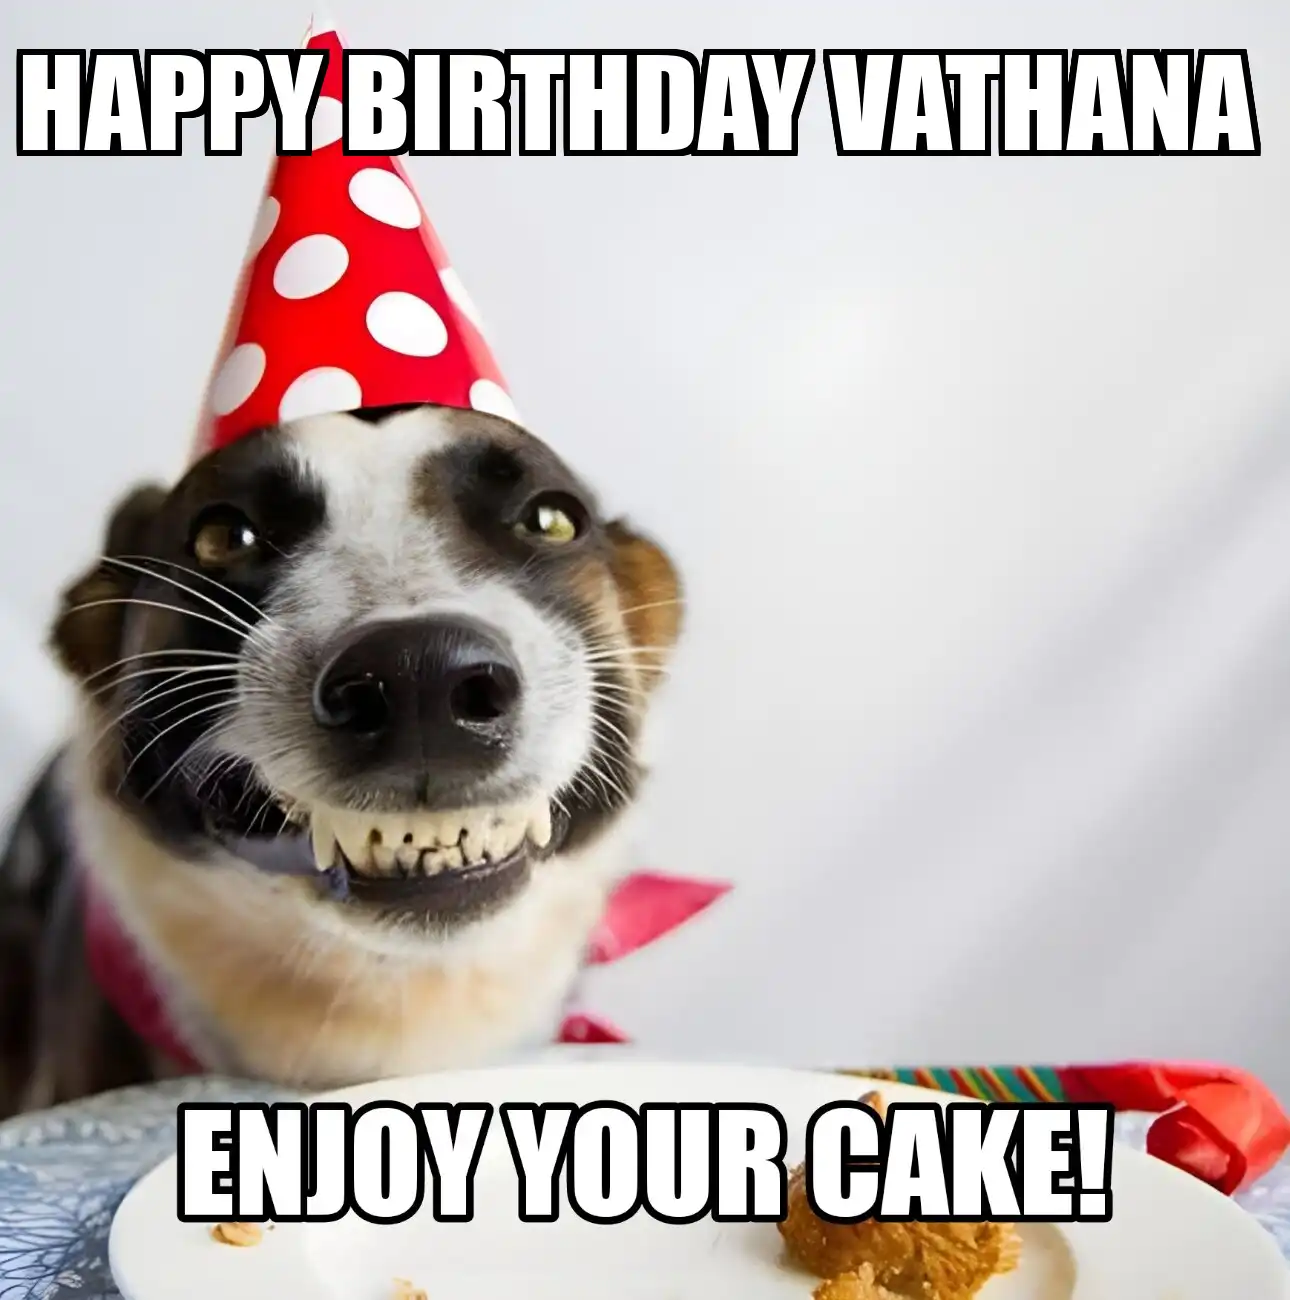 Happy Birthday Vathana Enjoy Your Cake Dog Meme